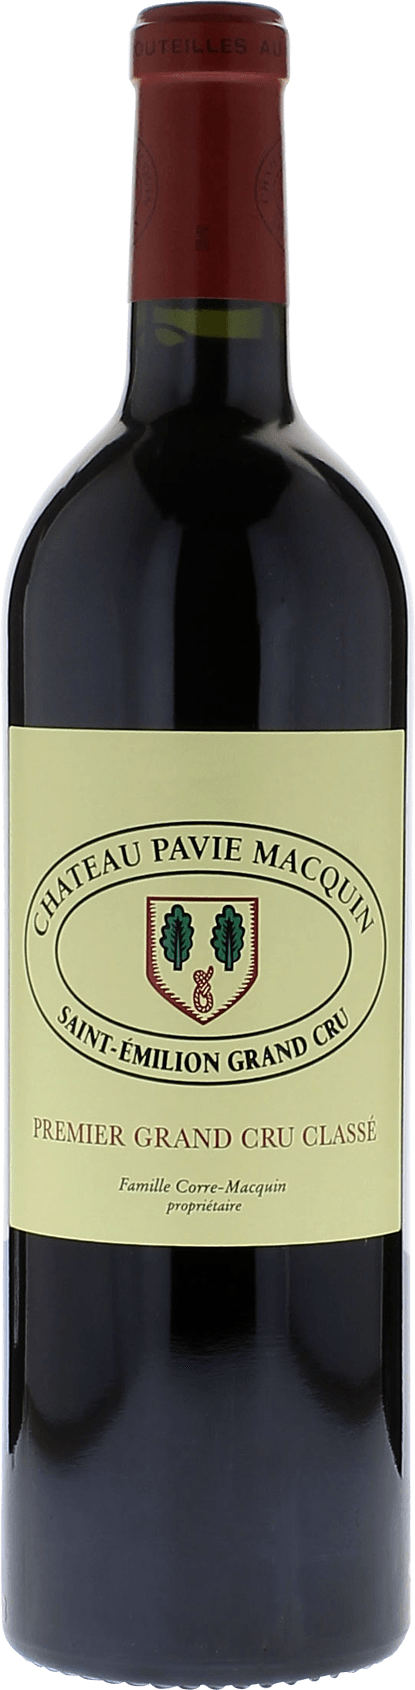 Pavie macquin 1993 1er Grand cru B class Saint-Emilion, Bordeaux rouge